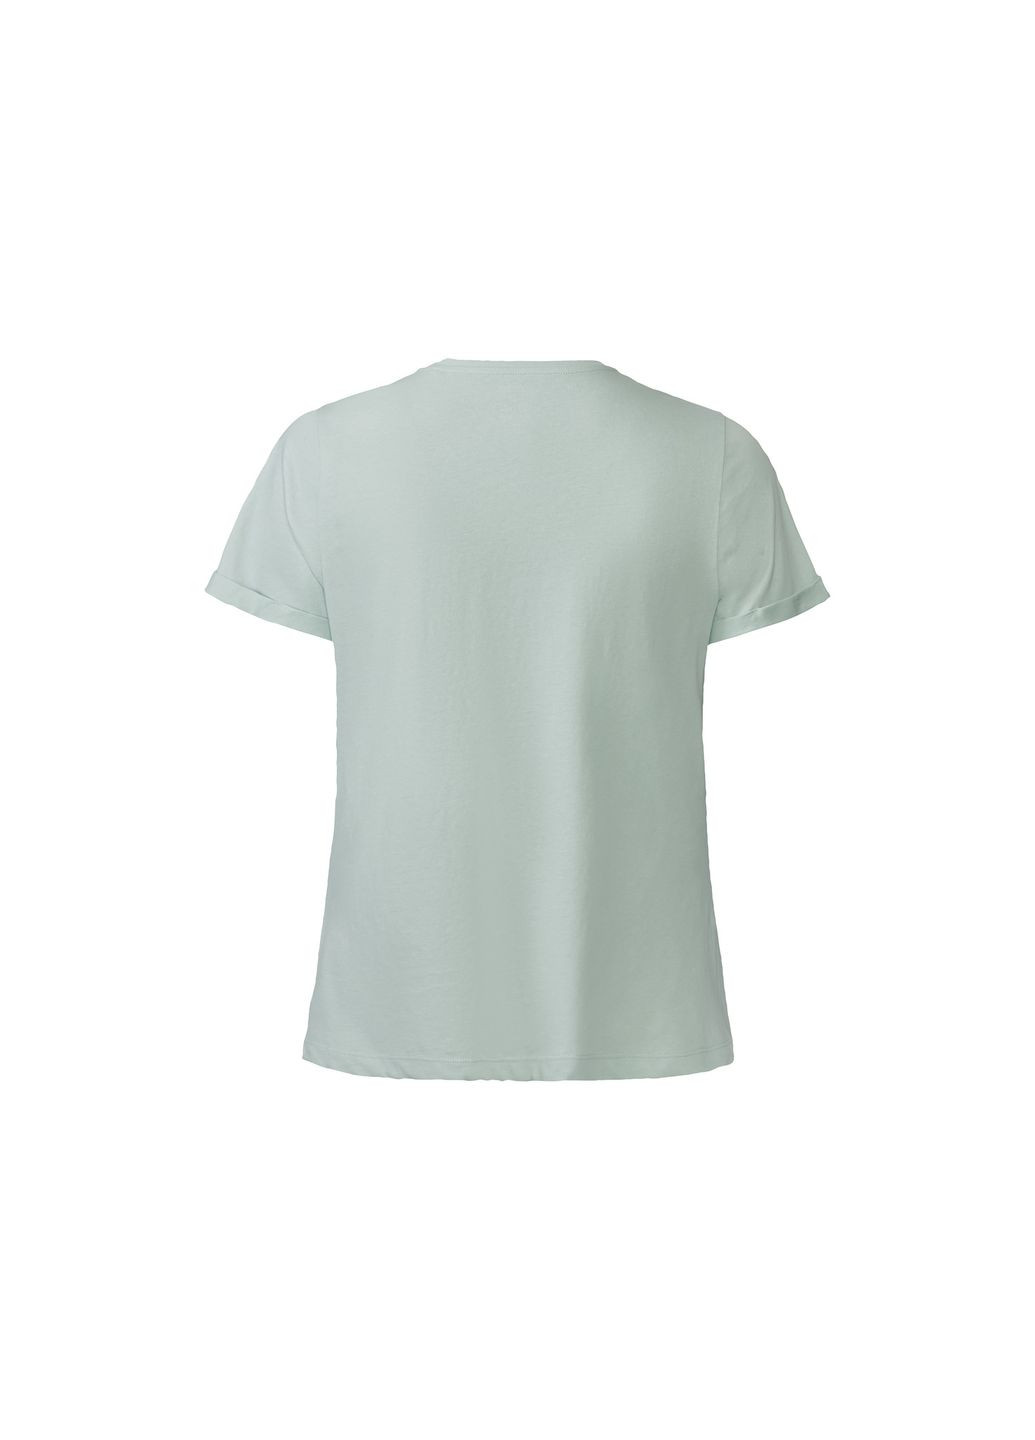 Зеленая пижама (футболка и шорты) для женщины lidl 409994 Esmara